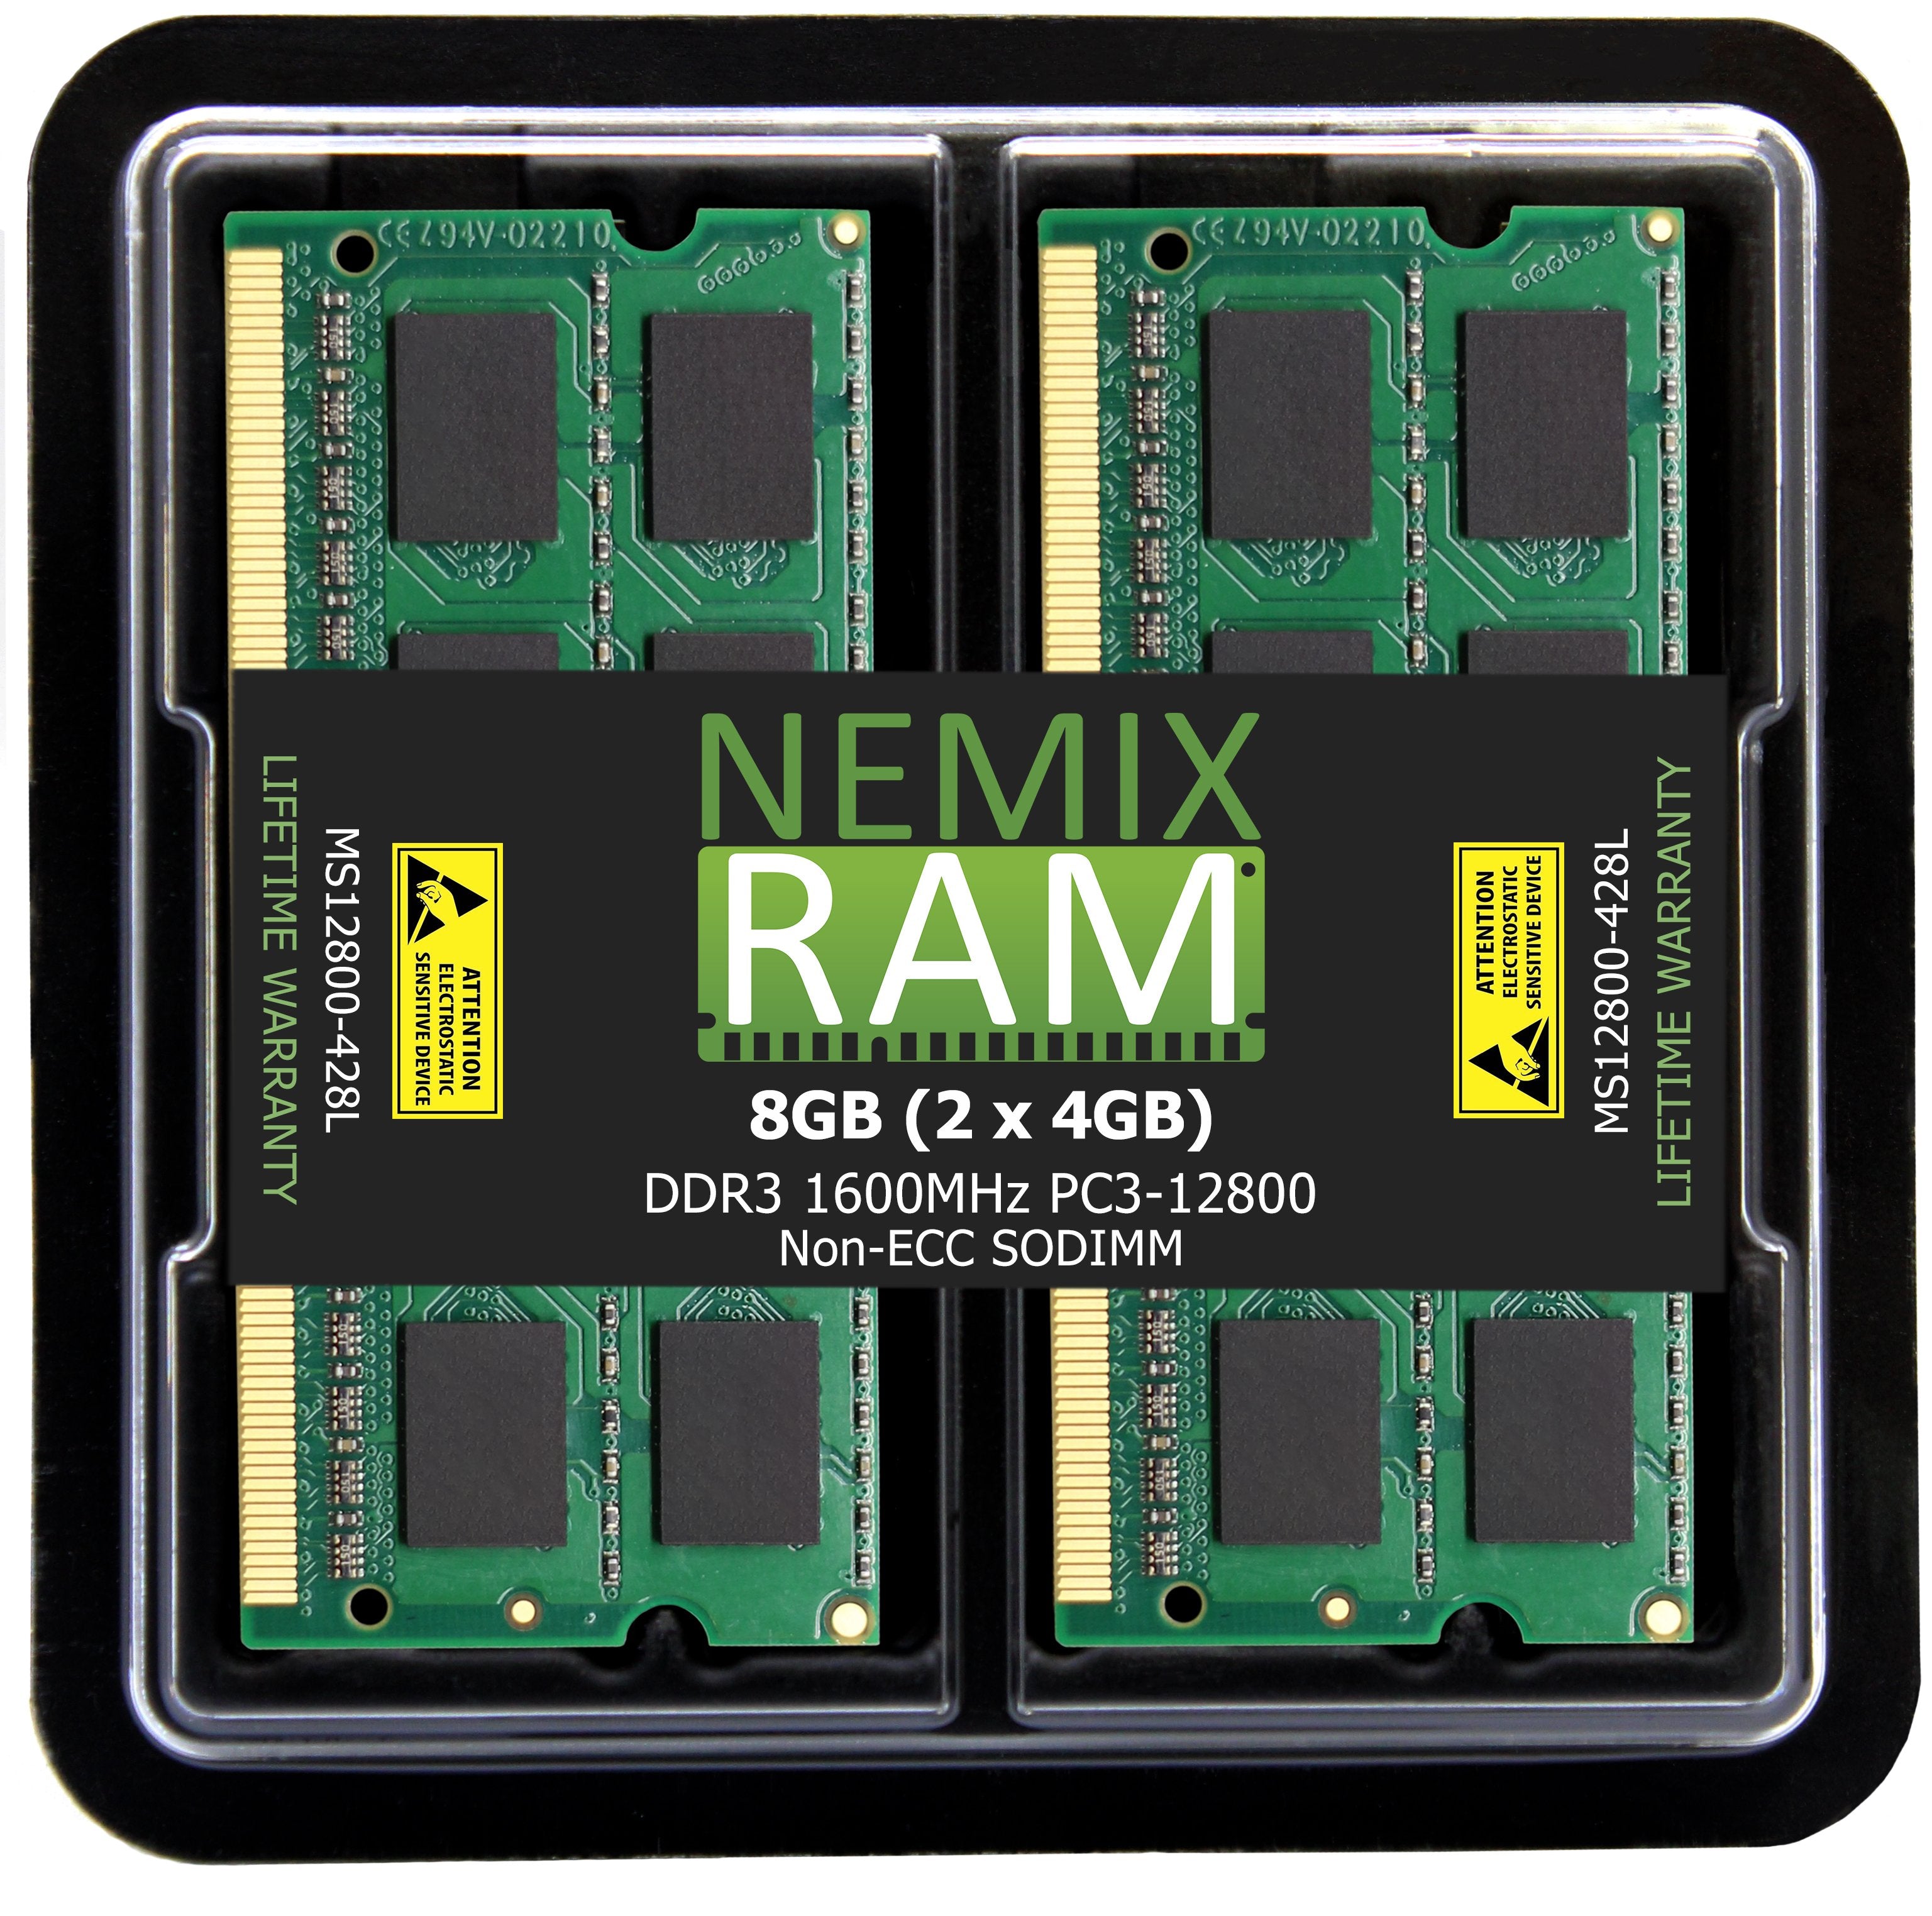 DDR3 1600MHZ PC3-12800 SODIMM for Apple Mac Mini 2012 (6,1 6,2)